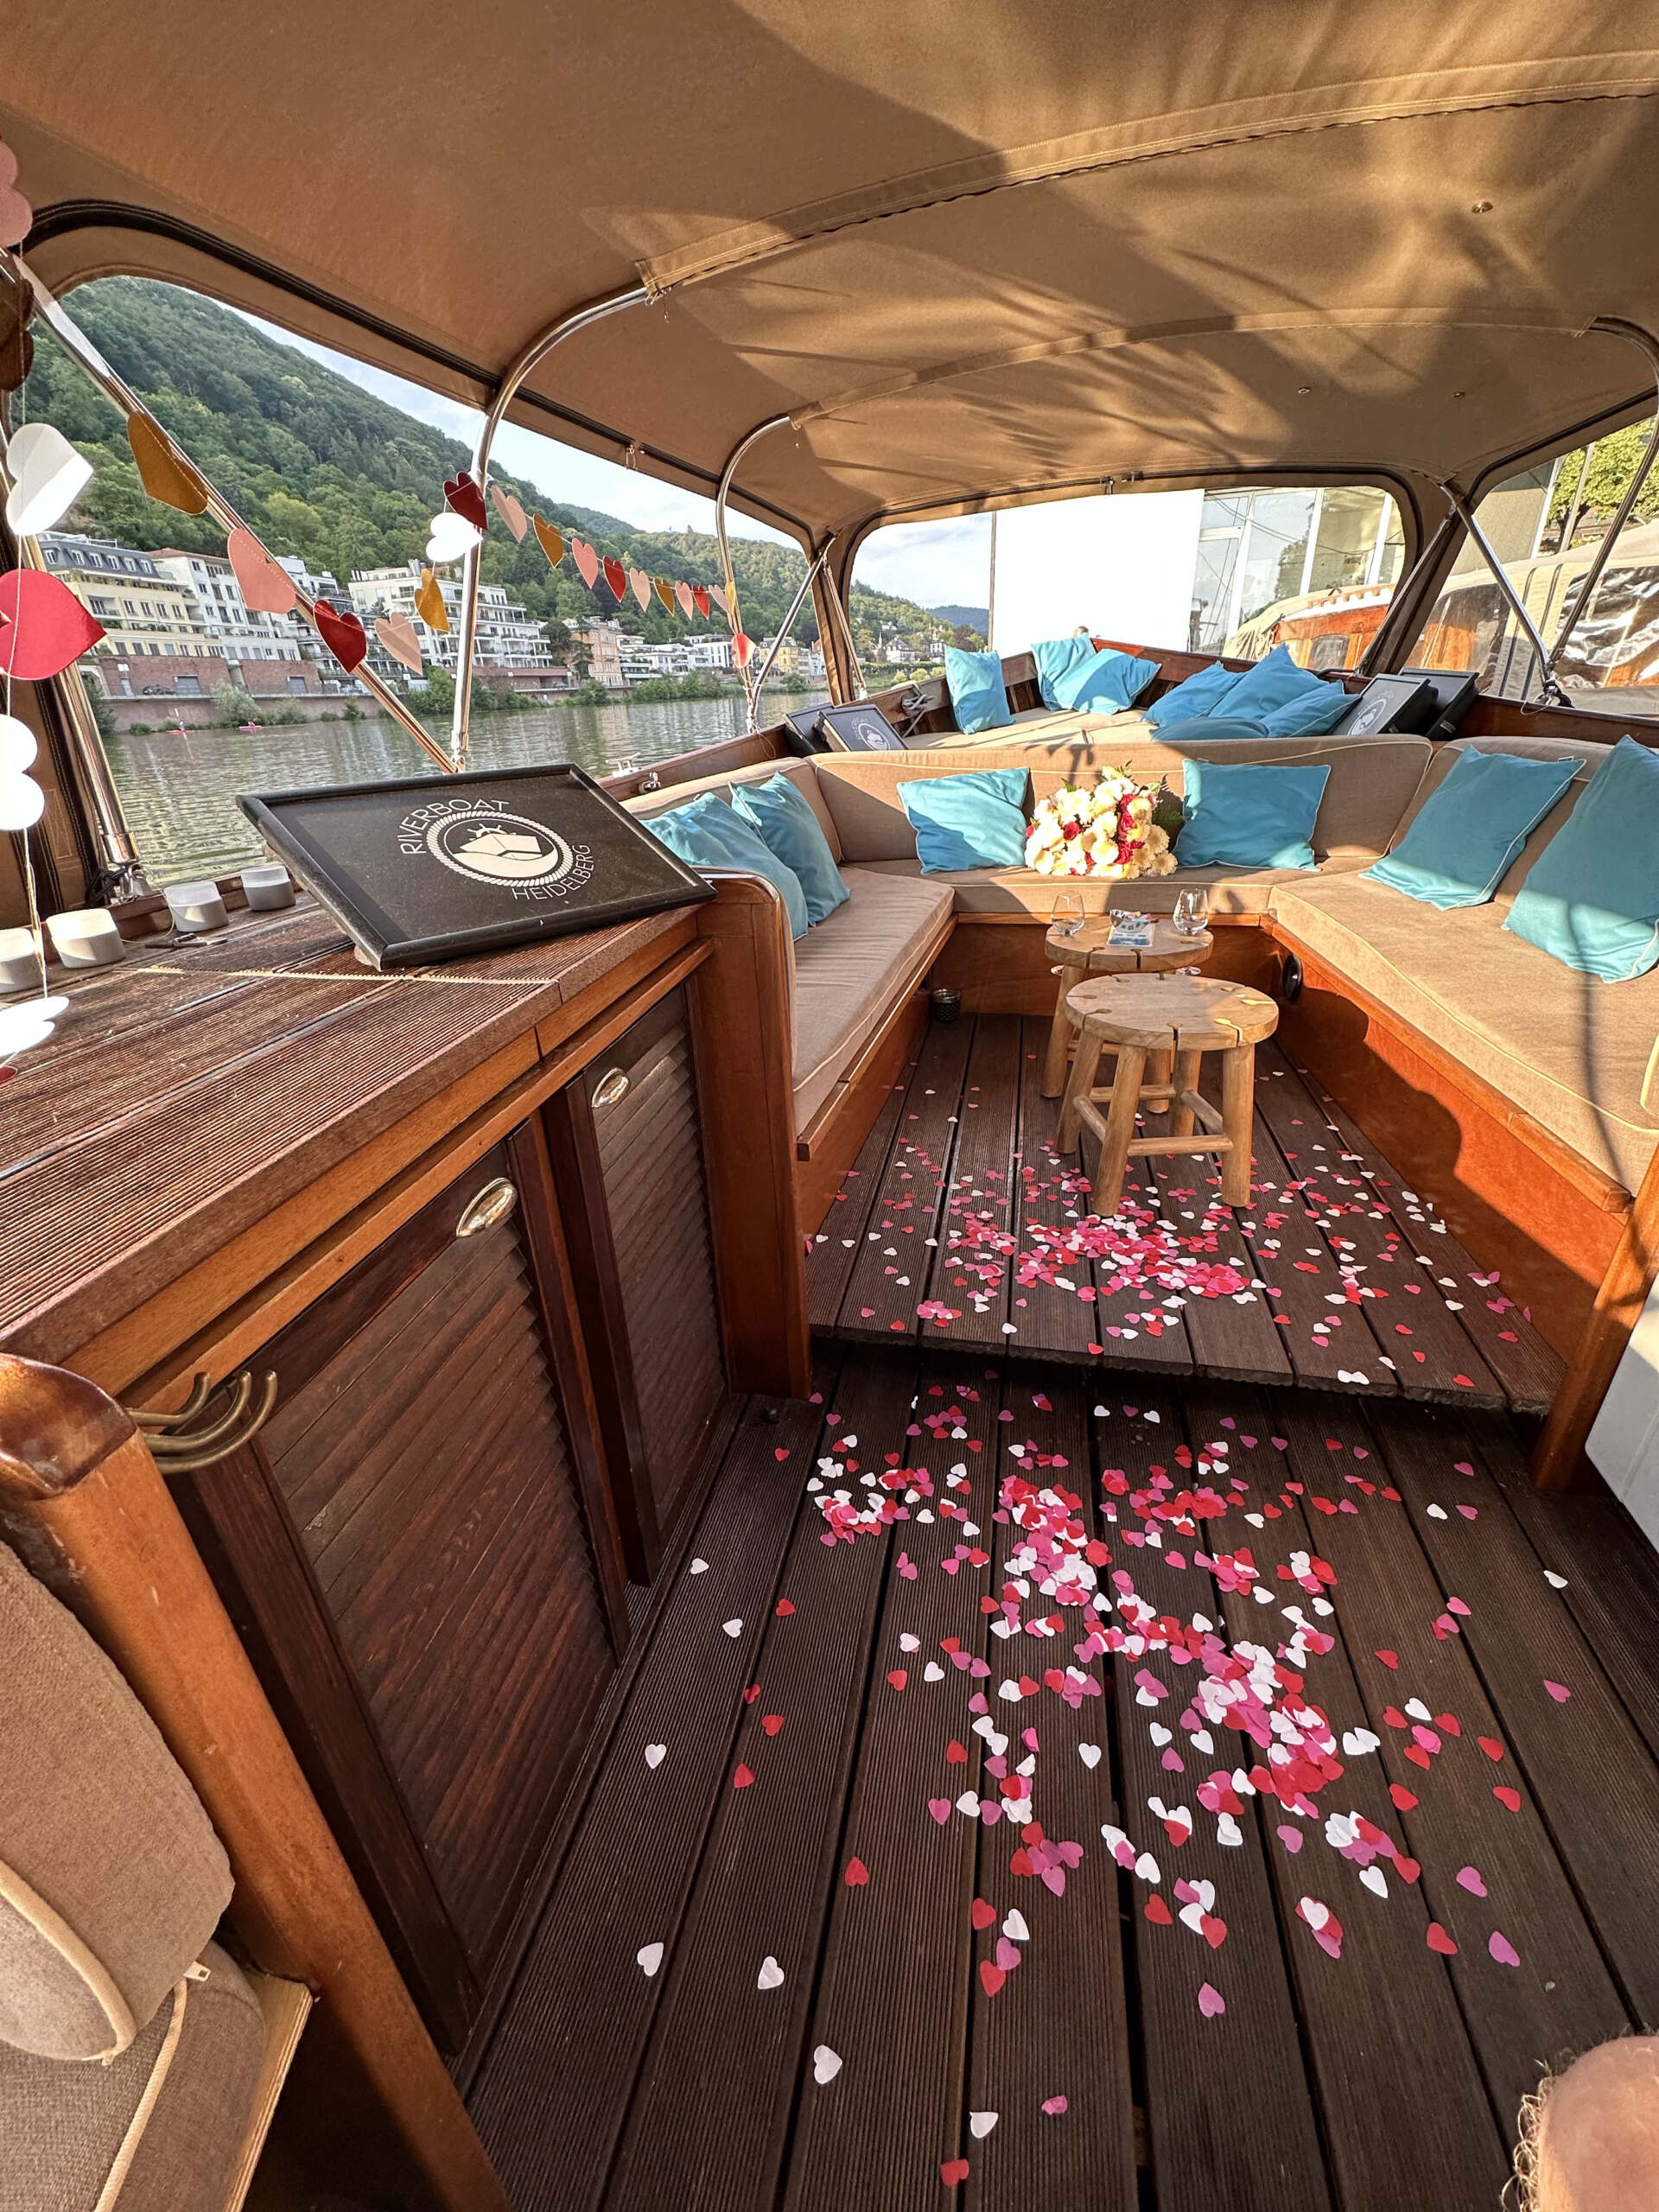 Das Boot von Riverboat ist vorbereitet für ein romantisches Date in Heidelberg